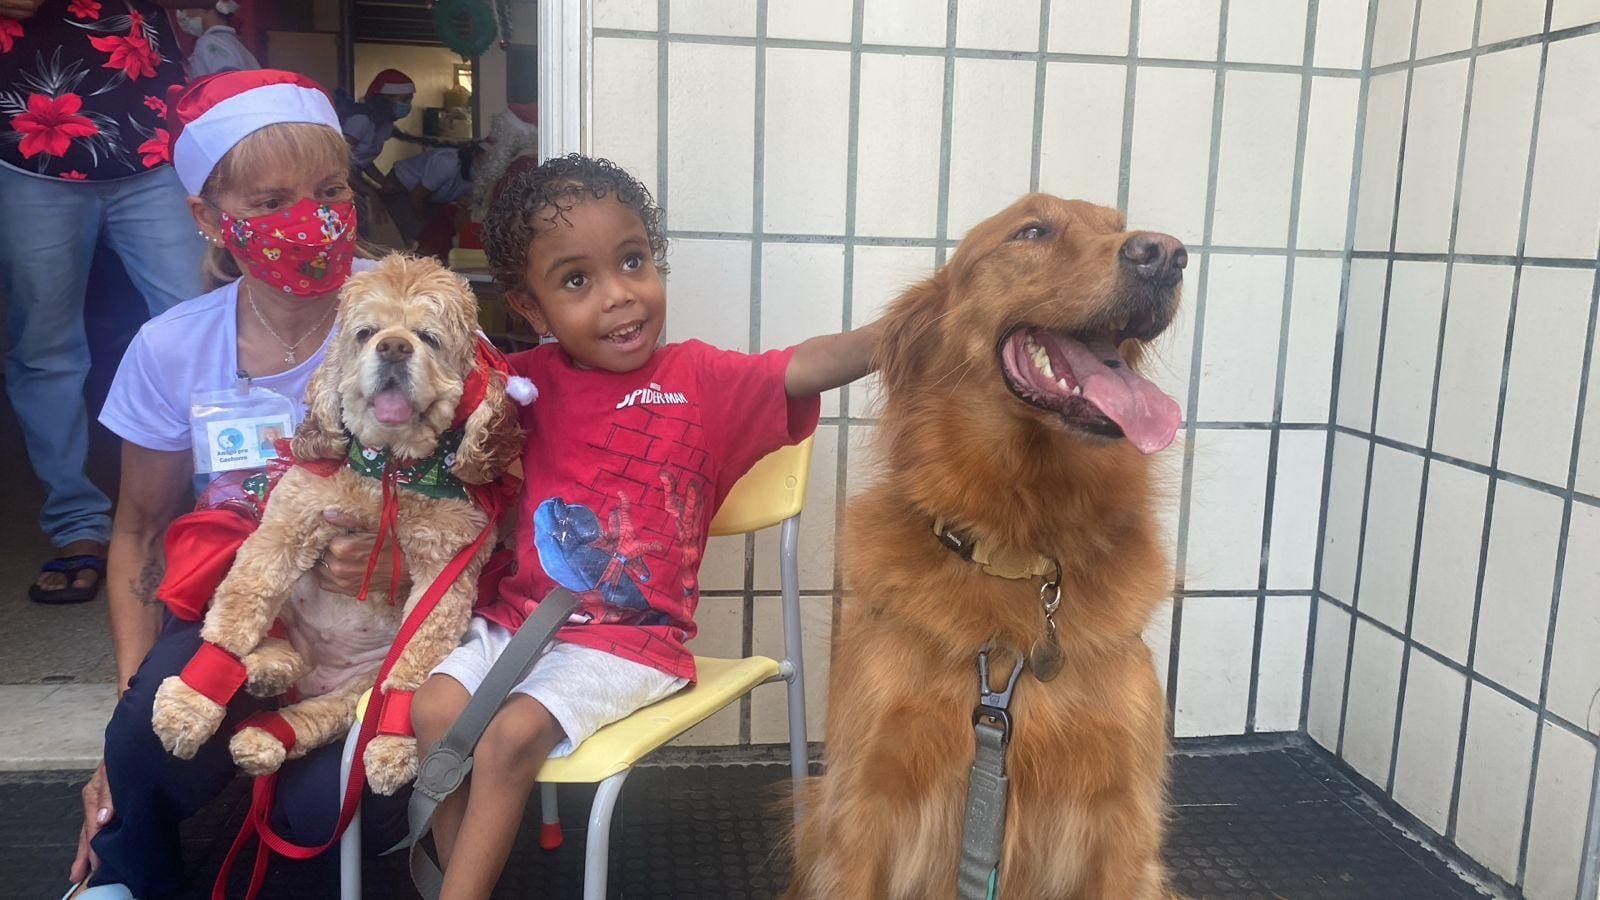 A cada 15 dias, Hospital das Clínicas da Universidade Federal de Minas Gerais (UFMG) recebe visitas ilustres: cães voluntários que levam alegria às crianças internadas no local